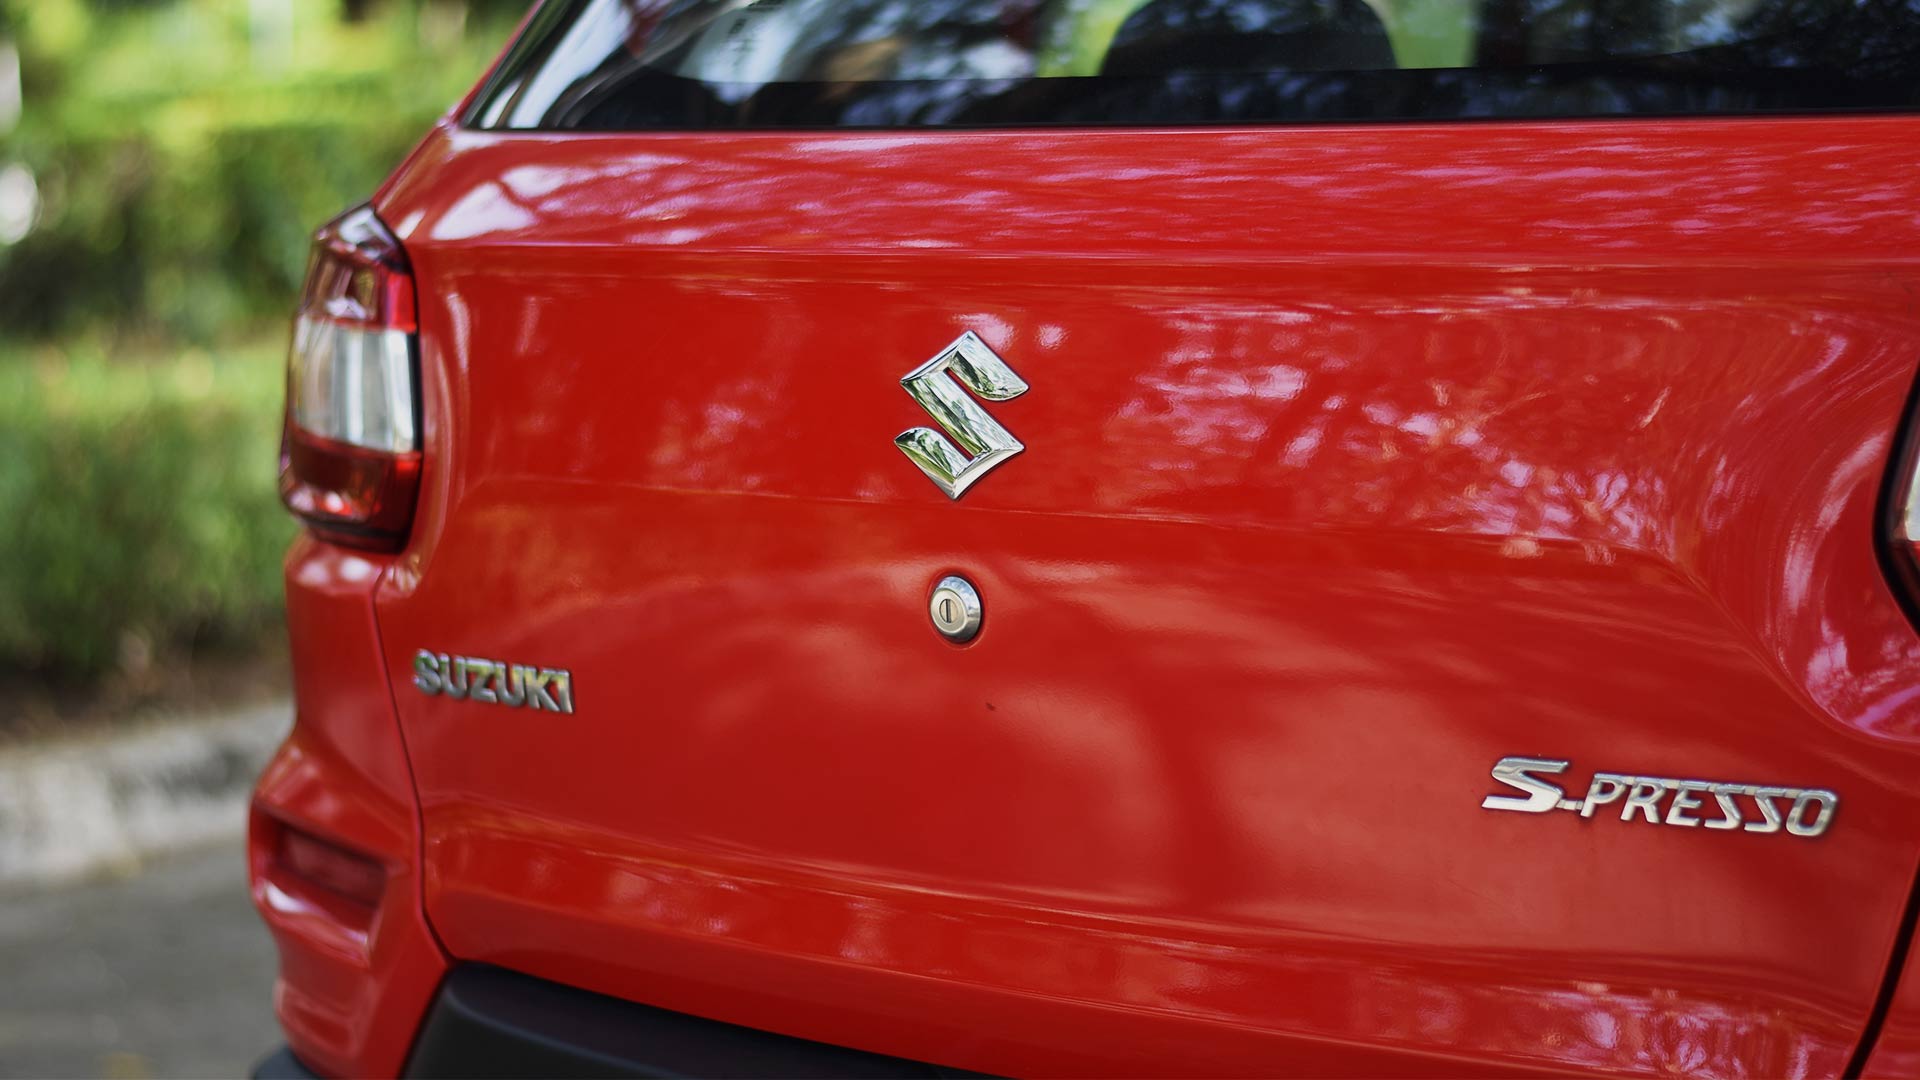 The Suzuki S-Presso rear close up